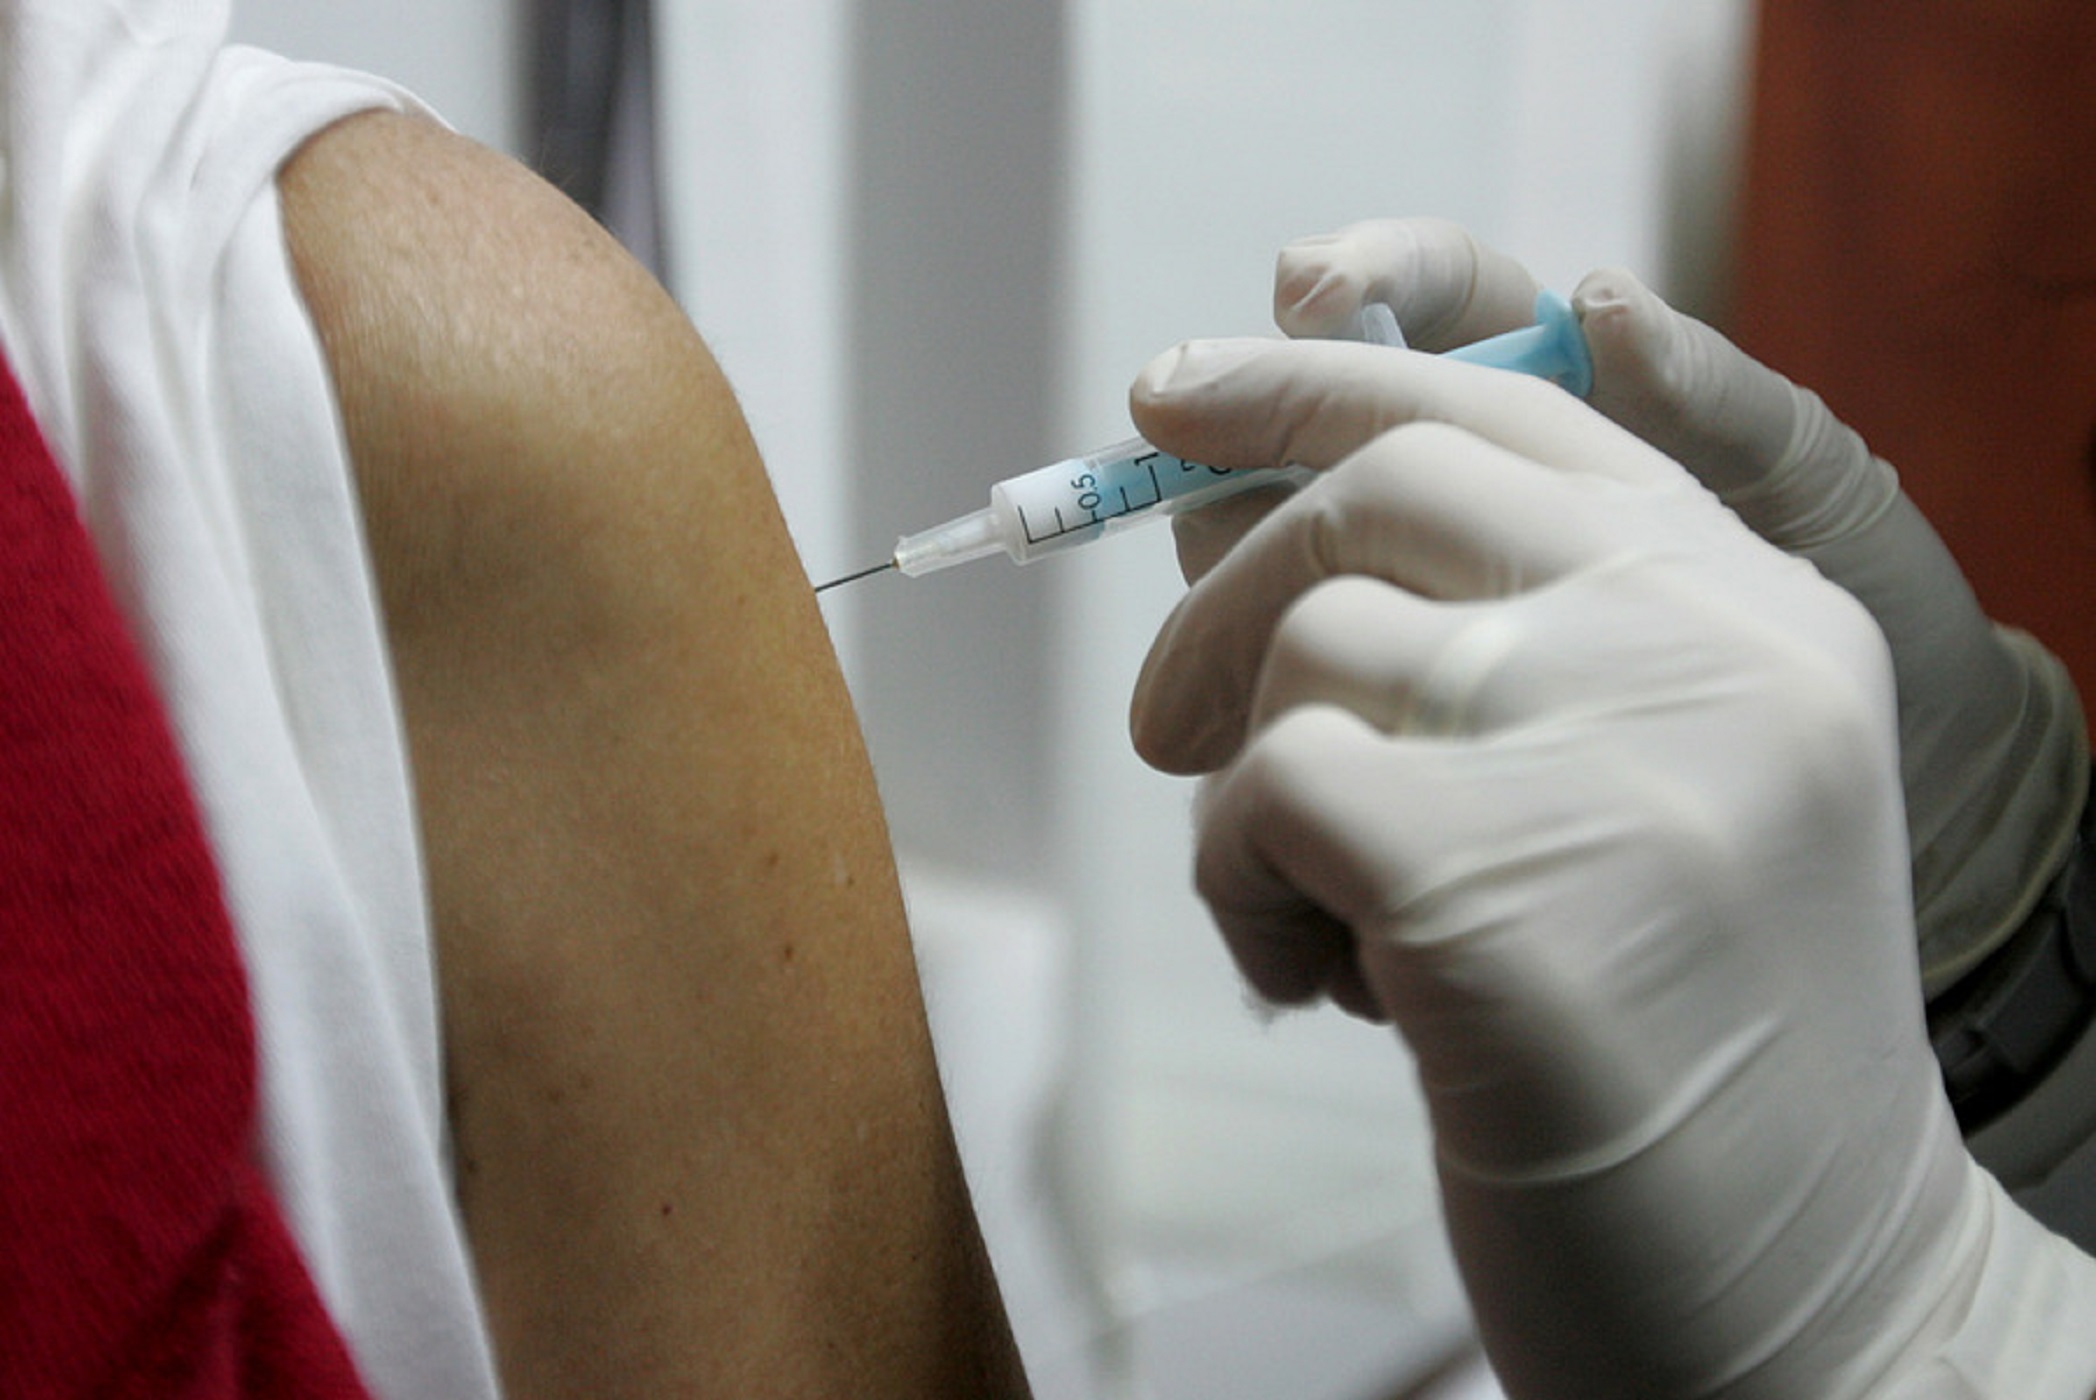 Το νέο πρόγραμμα εμβολιασμών για το 2020 – «Προσοχή στην παραμέληση εμβολίων μέσω πανδημίας»